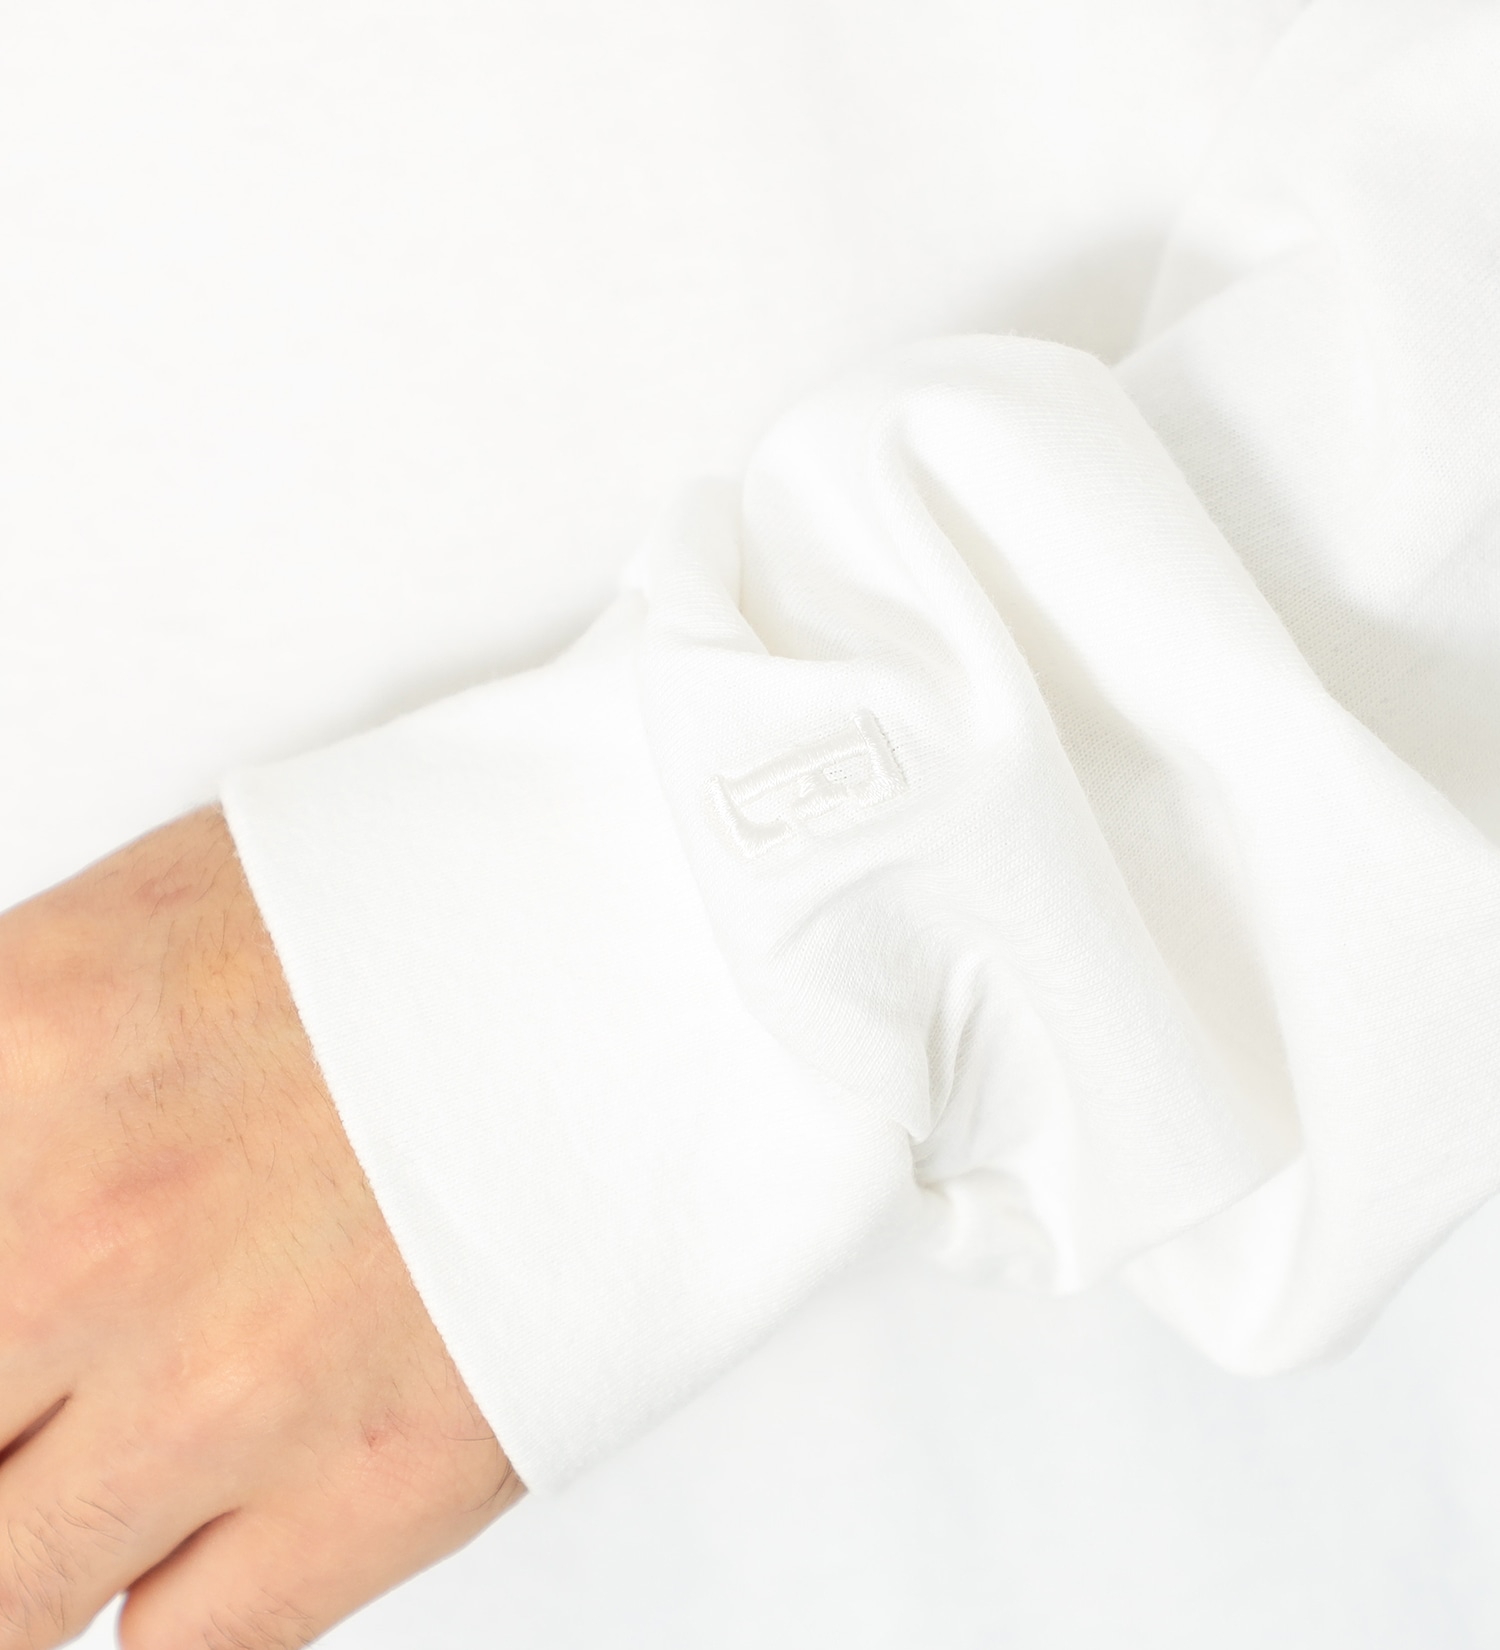 EDWIN(エドウイン)の【SALE】バックプリント FUJIYAMA Tシャツ 長袖|トップス/Tシャツ/カットソー/メンズ|ホワイト